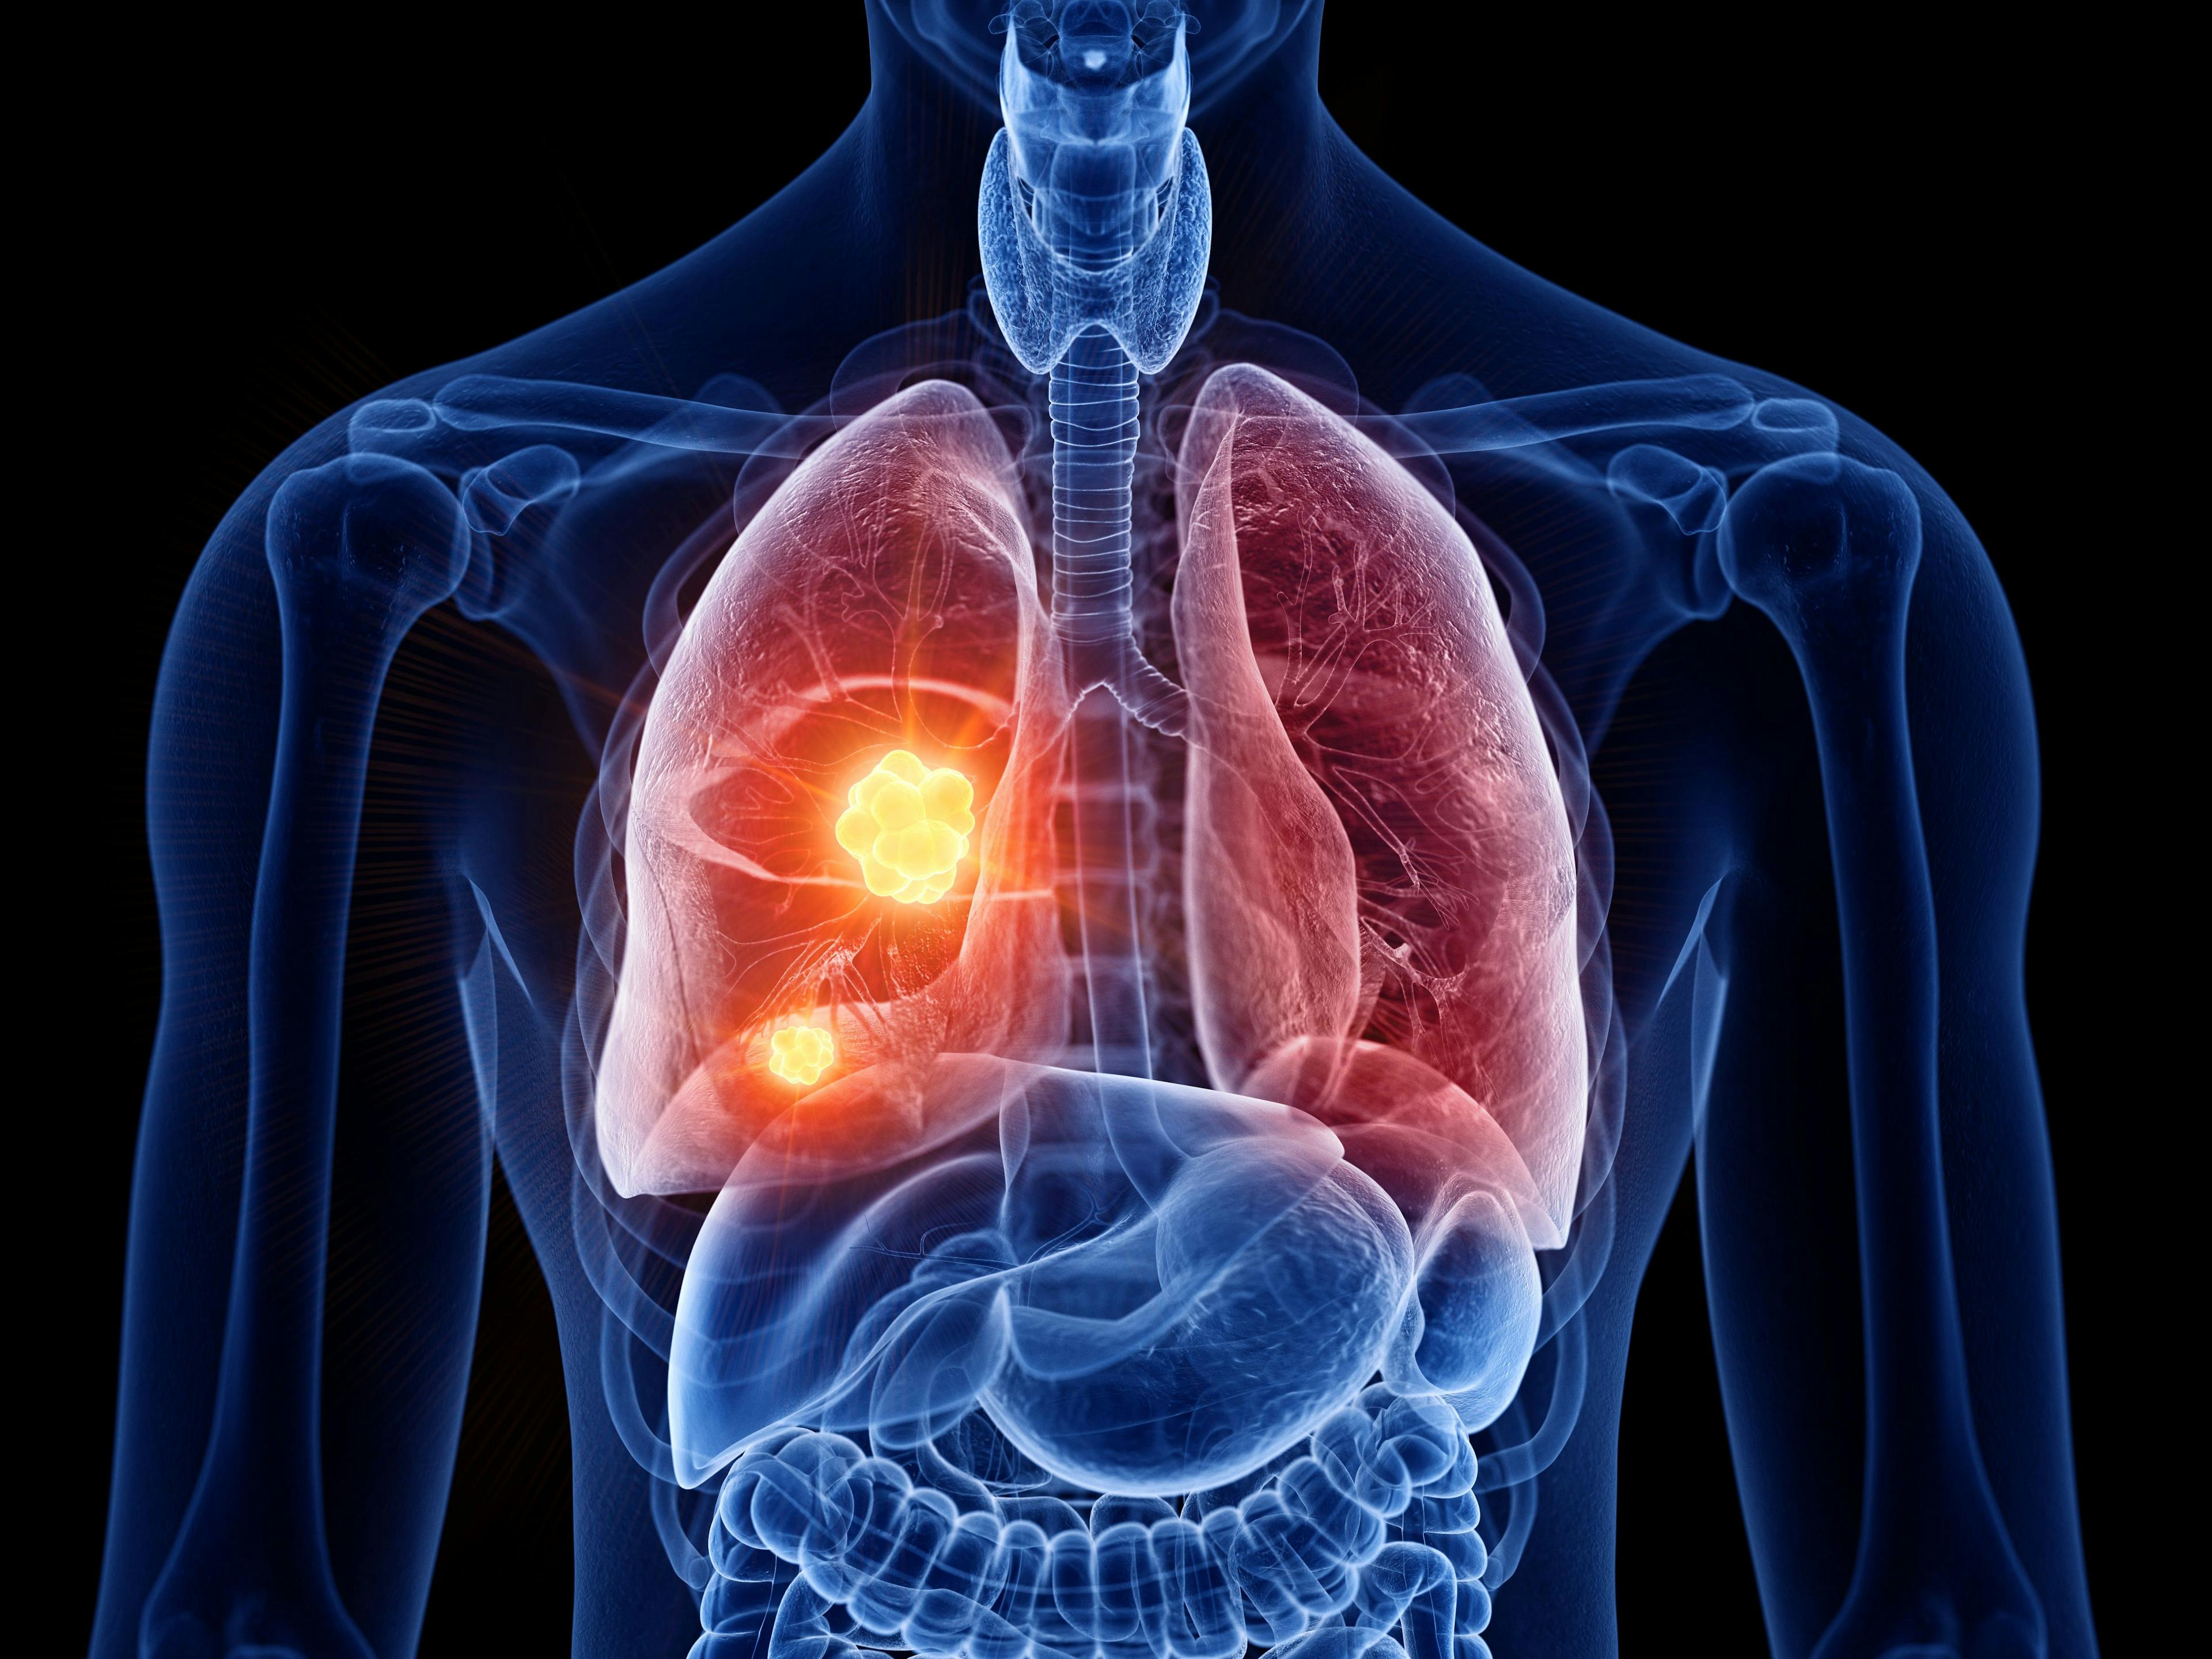 Lung cancer illustration | Image credit: SciePro - stock.adobe.com